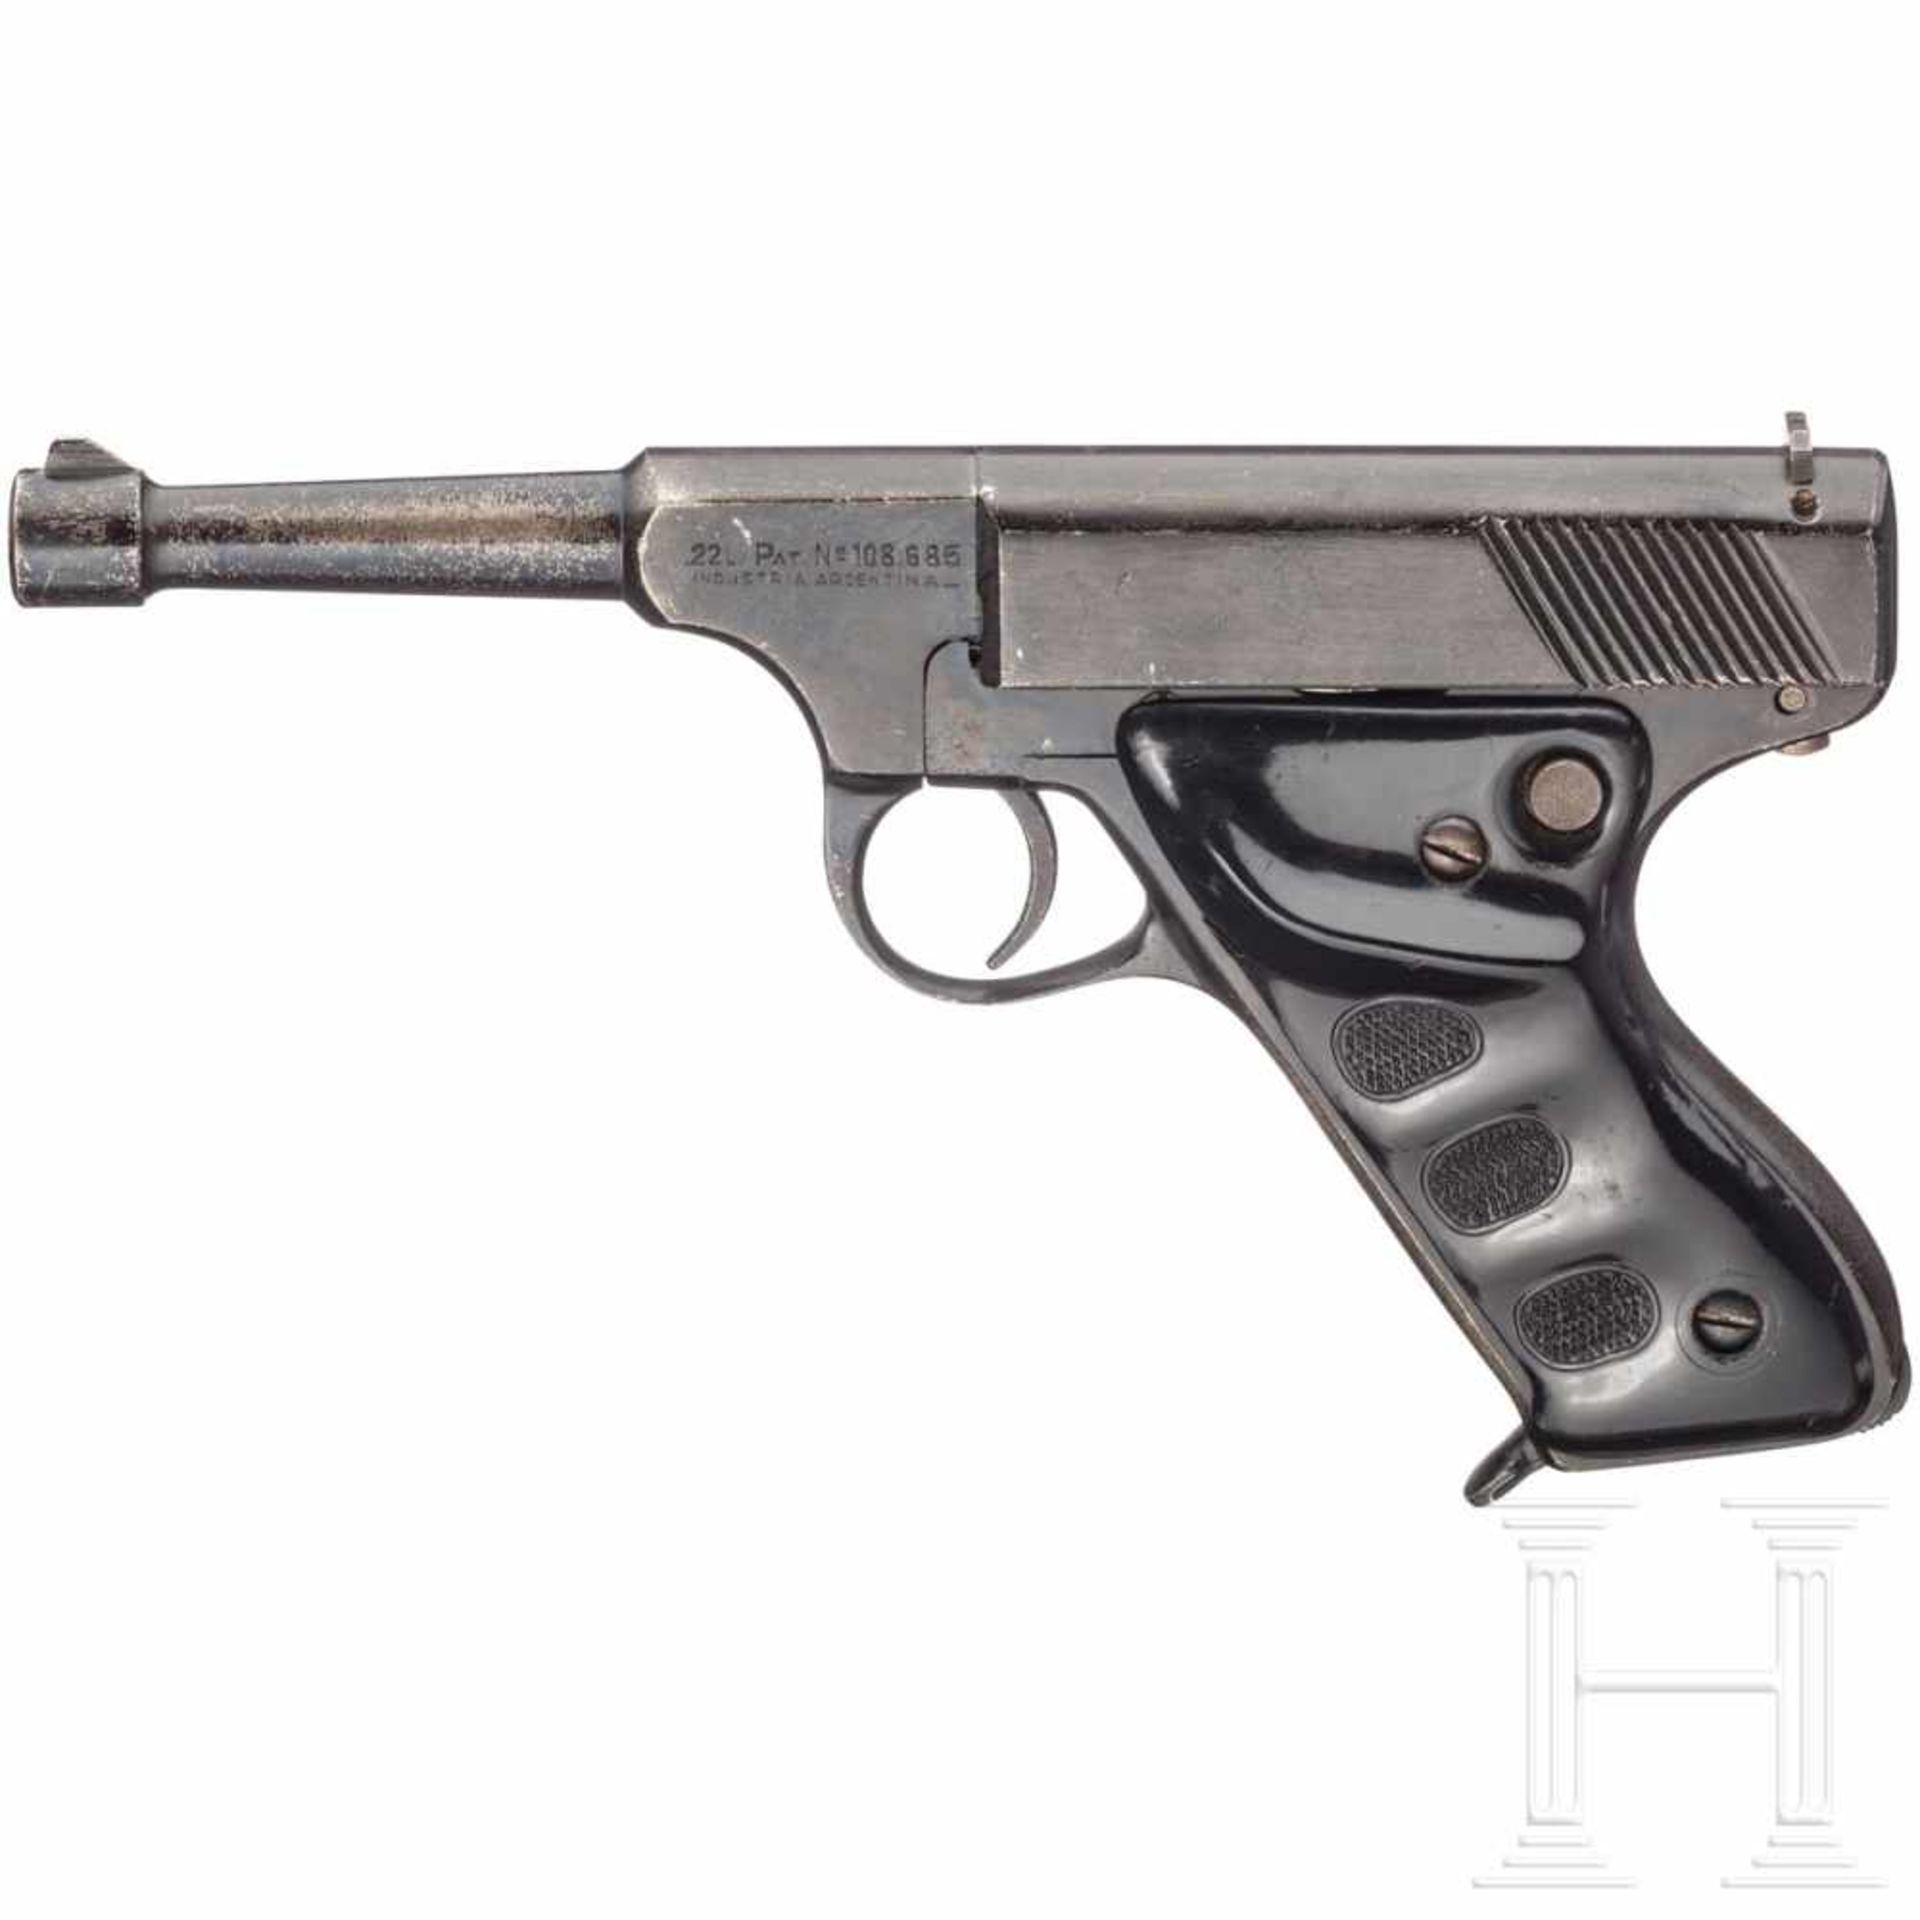 Argentinien - Pistole GüntherKal. .22 l.r., Nr. 12441, blanker Lauf, Länge 105 mm. Zehnschüssig. Dt.